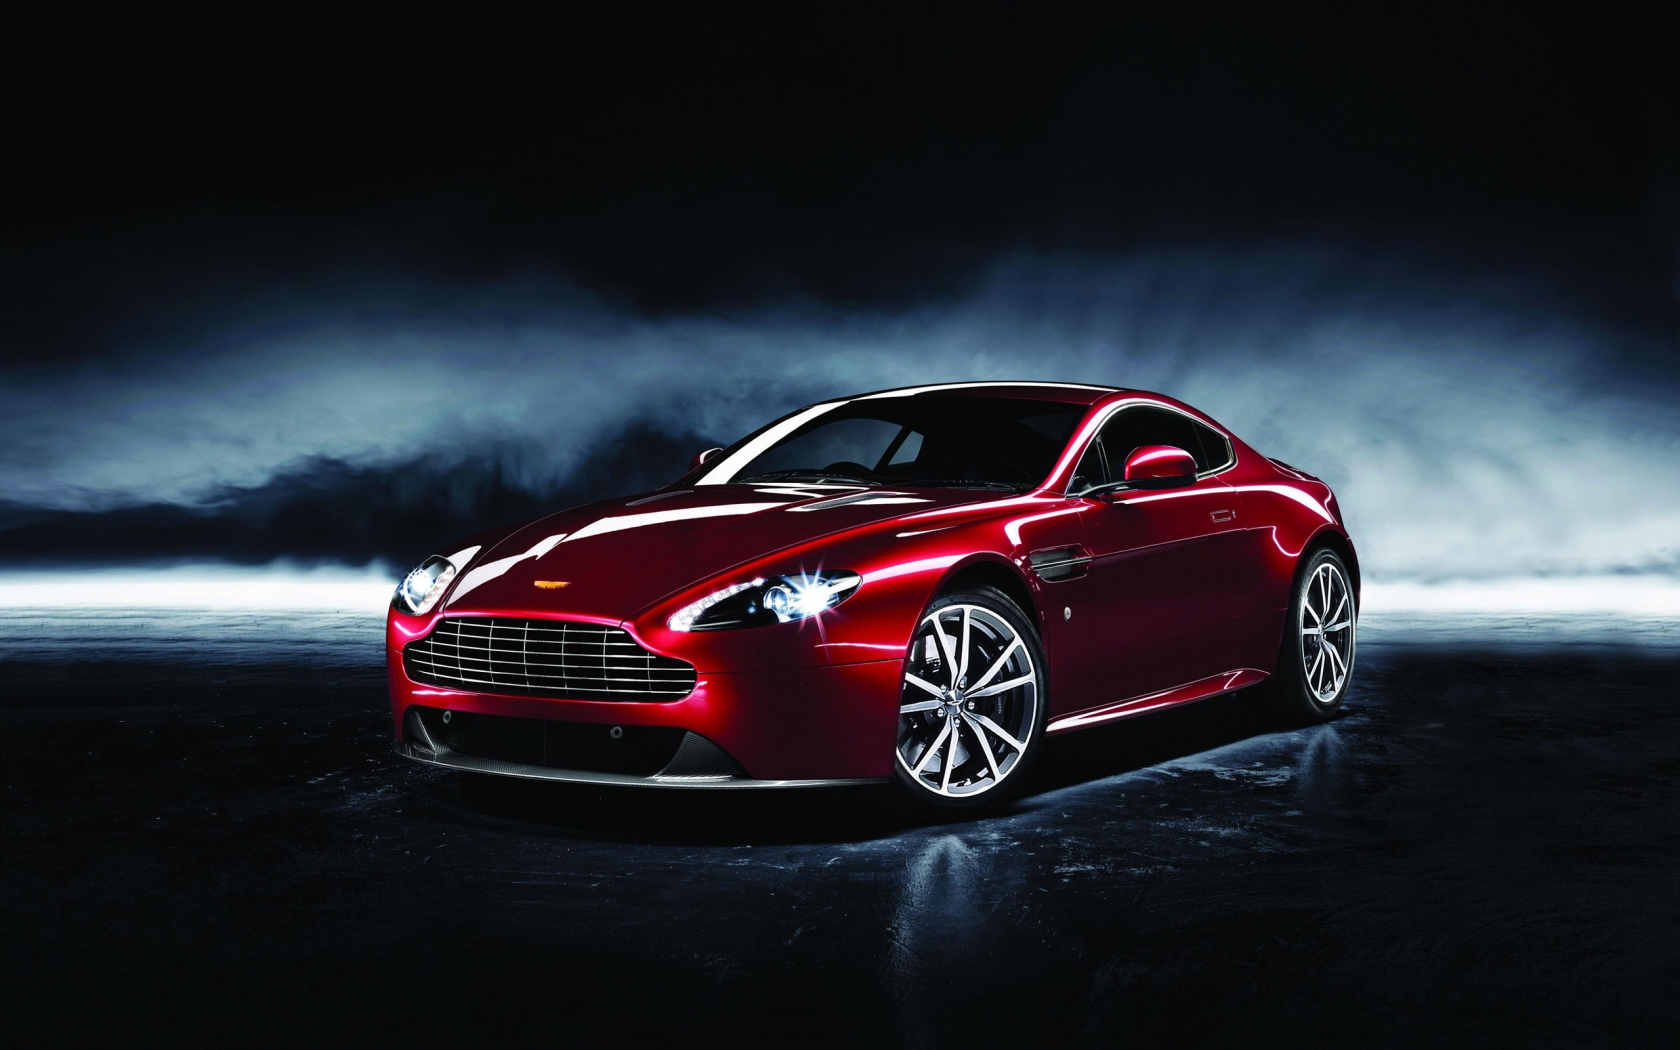 2013 Aston Martin Dragon for 1680 x 1050 widescreen resolution